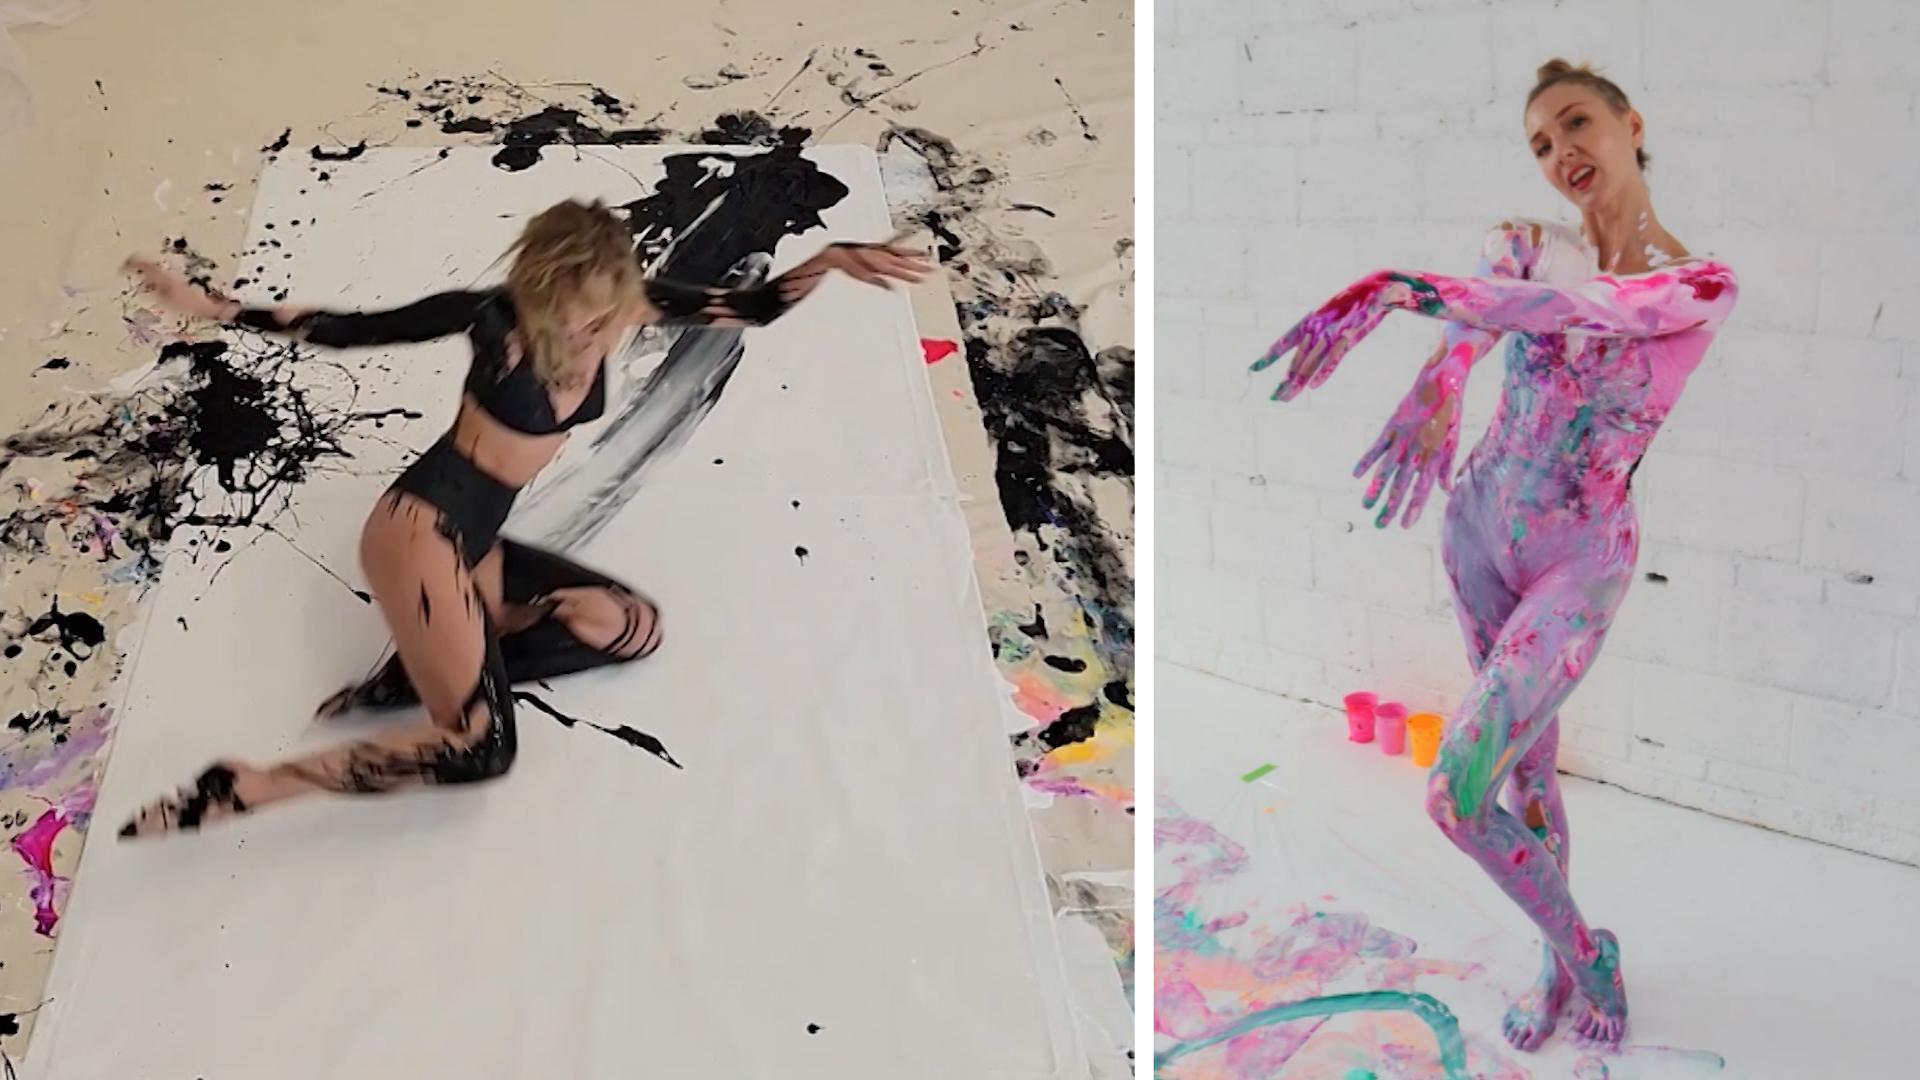 Tänzerin malt Kunstwerk mit ihrem ganzen Körper! Voller Einsatz auf der Leinwand